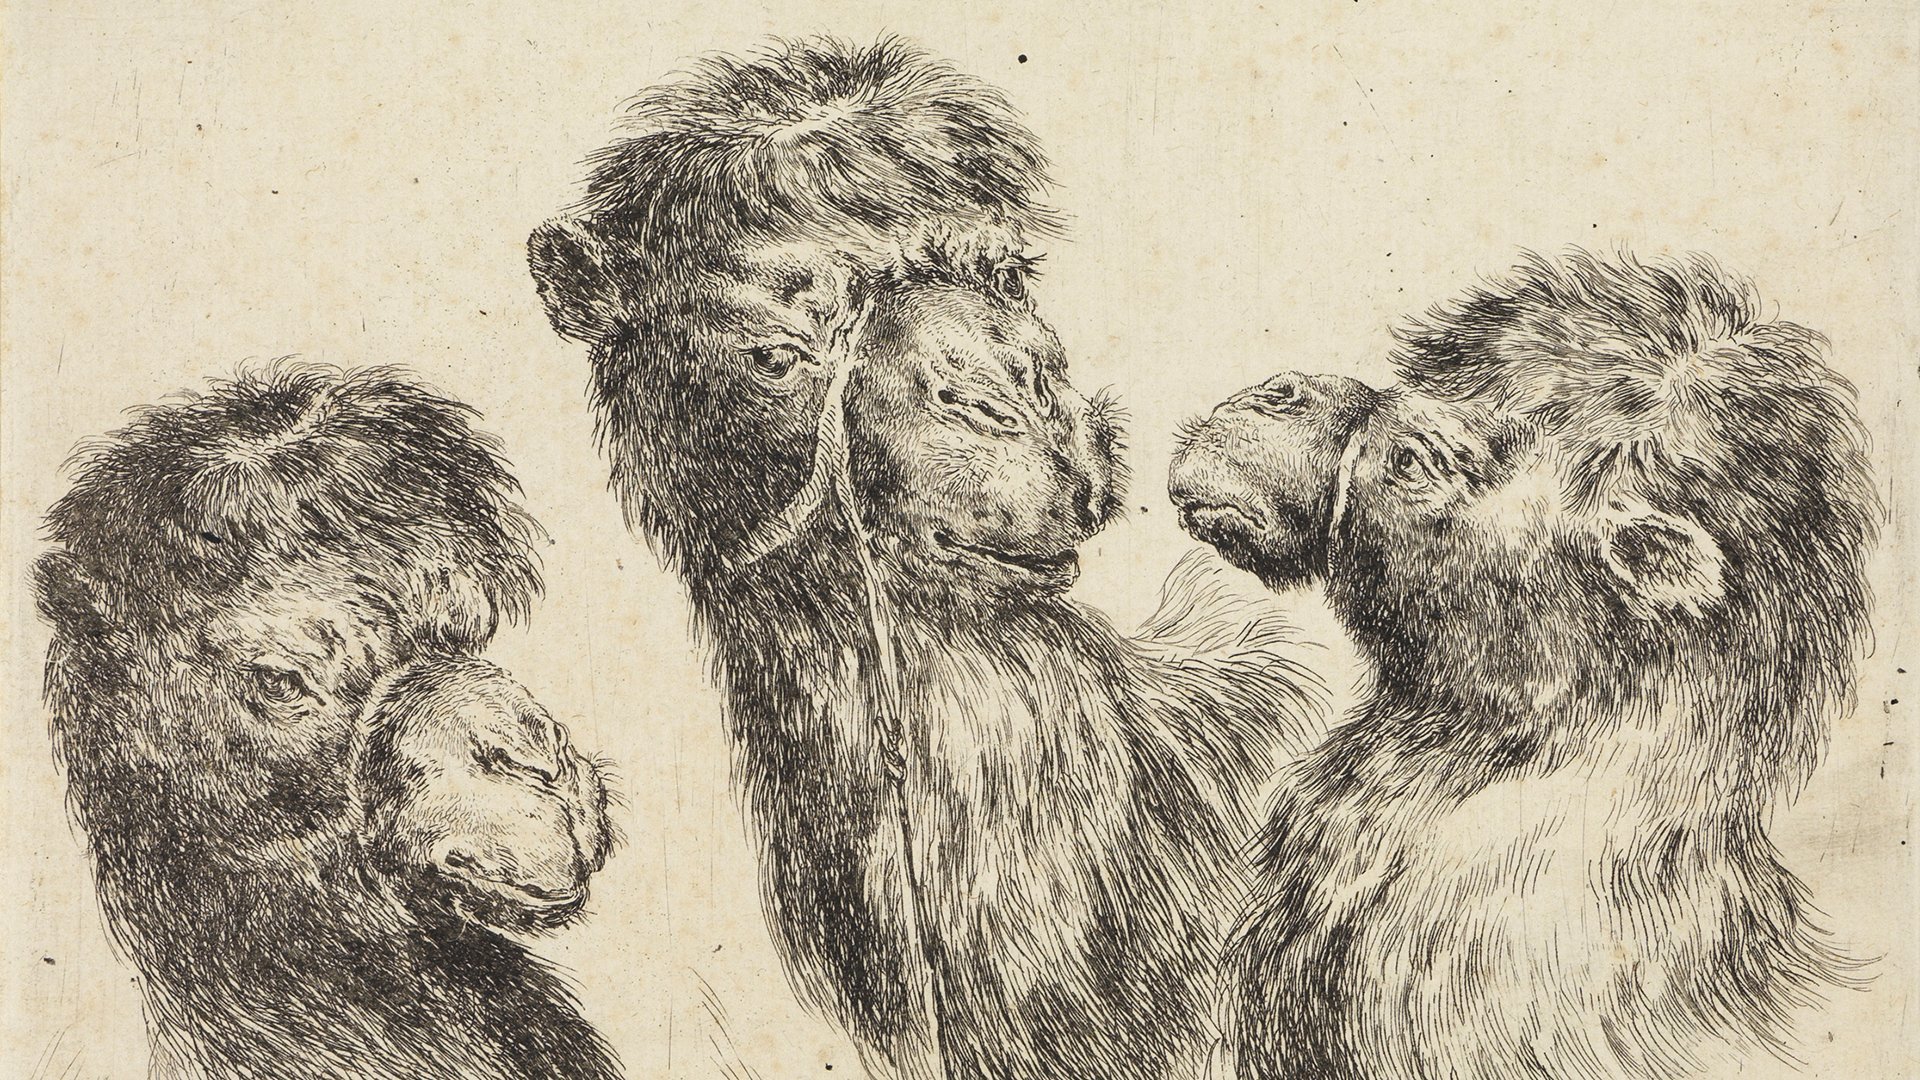 Abbildung von Stefano della Bellas Zeichnung verschiedener Tierköpfe. Dargestellt sind drei Kamelköpfe.